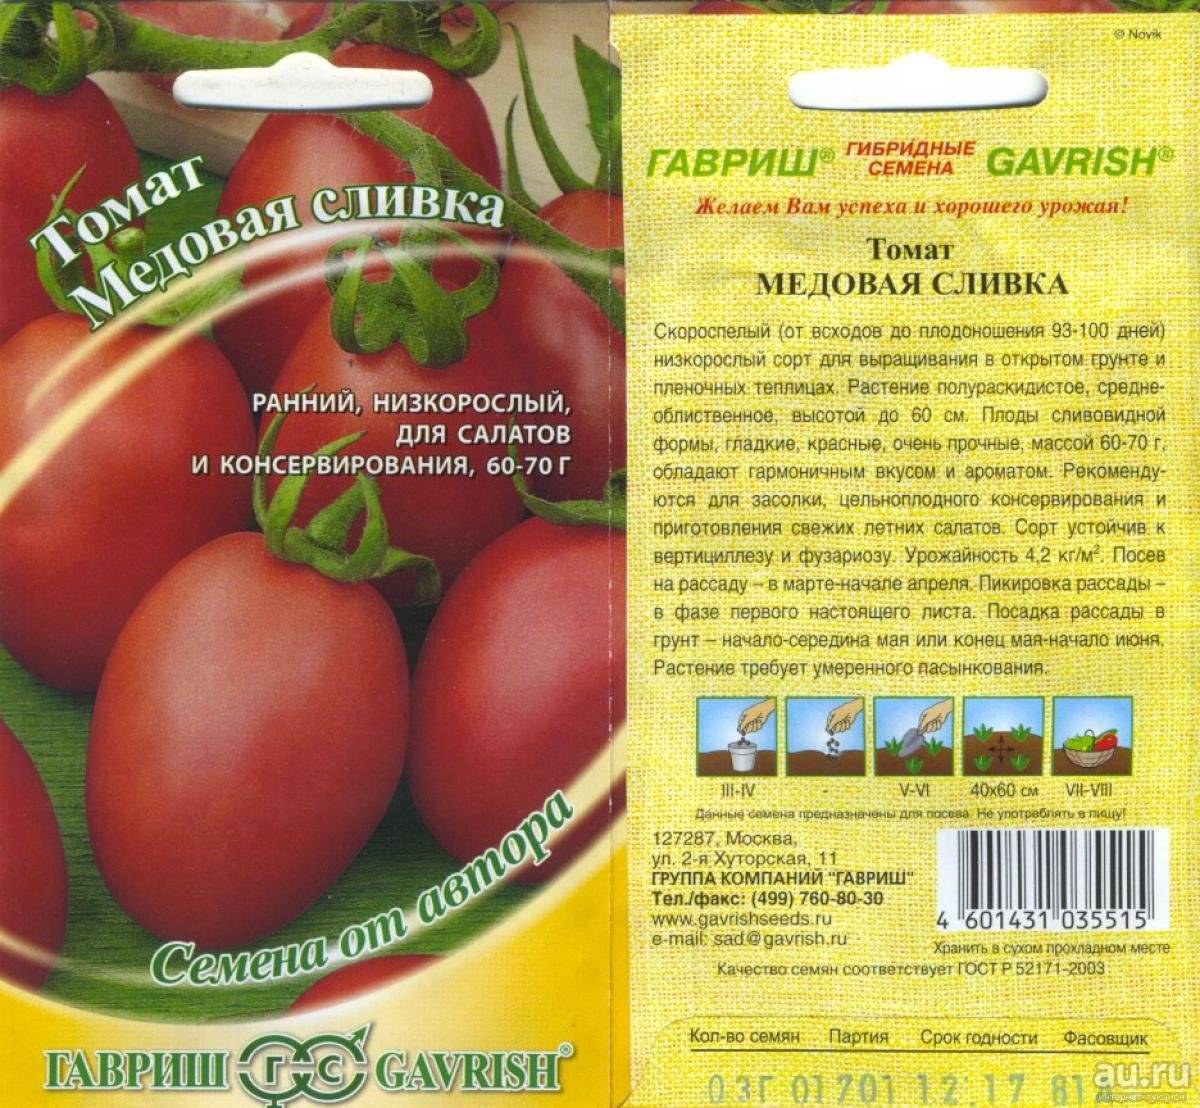 Сорта томатов сливка ?: описание, фото, правила ухода | qlumba.com